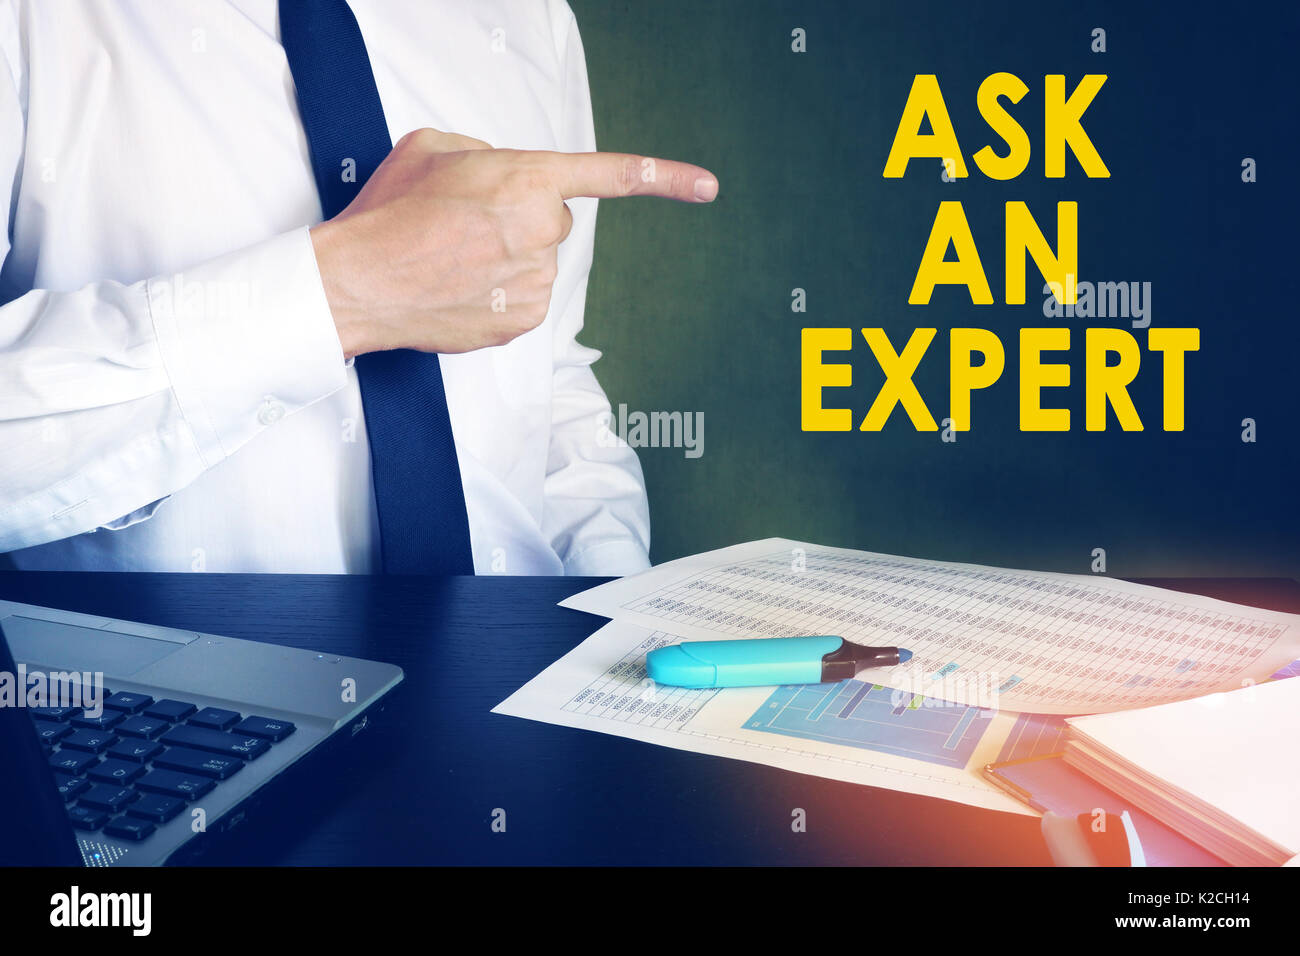 Empresario apuntando a firmar pregunte a un experto. Concepto de asesoramiento empresarial. Foto de stock